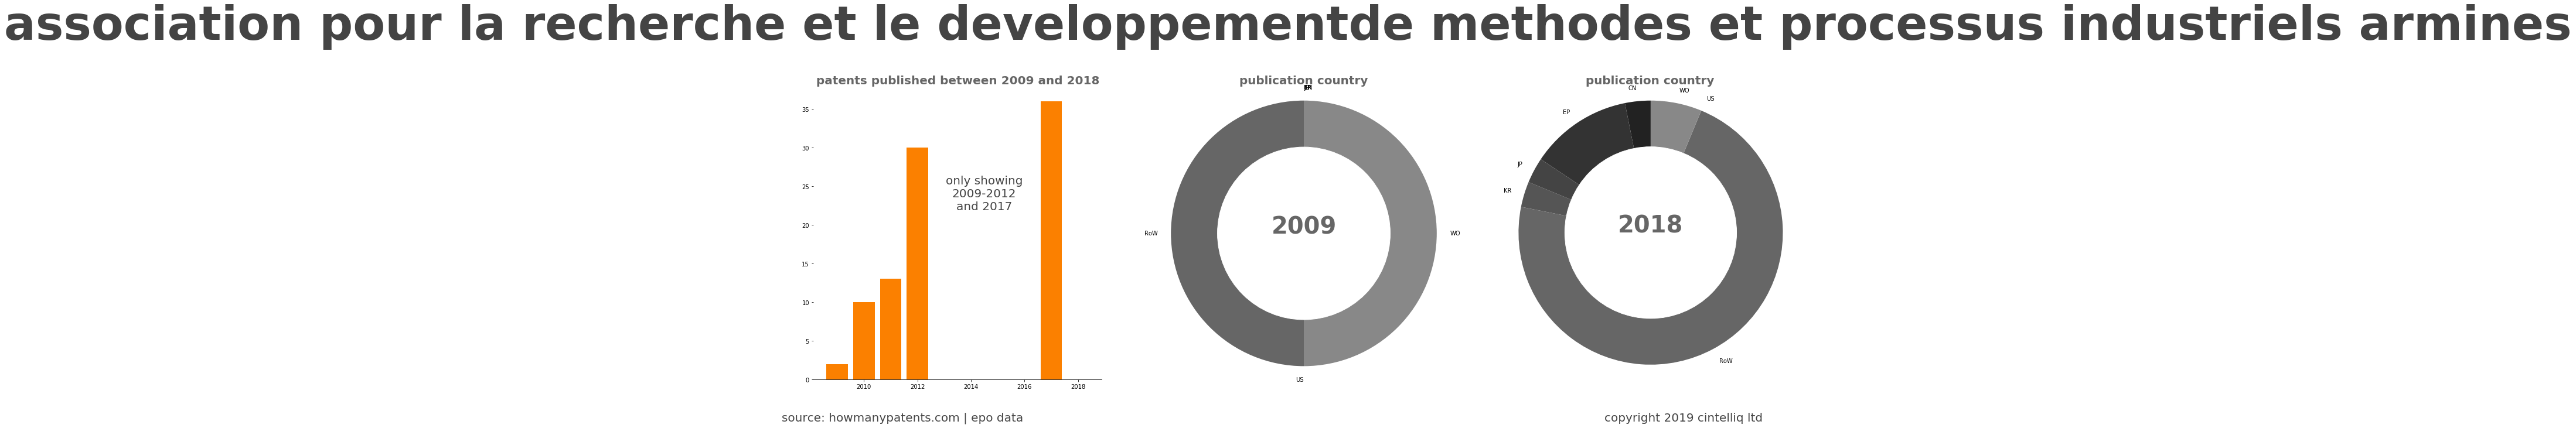 summary of patents for Association Pour La Recherche Et Le Developpementde Methodes Et Processus Industriels Armines